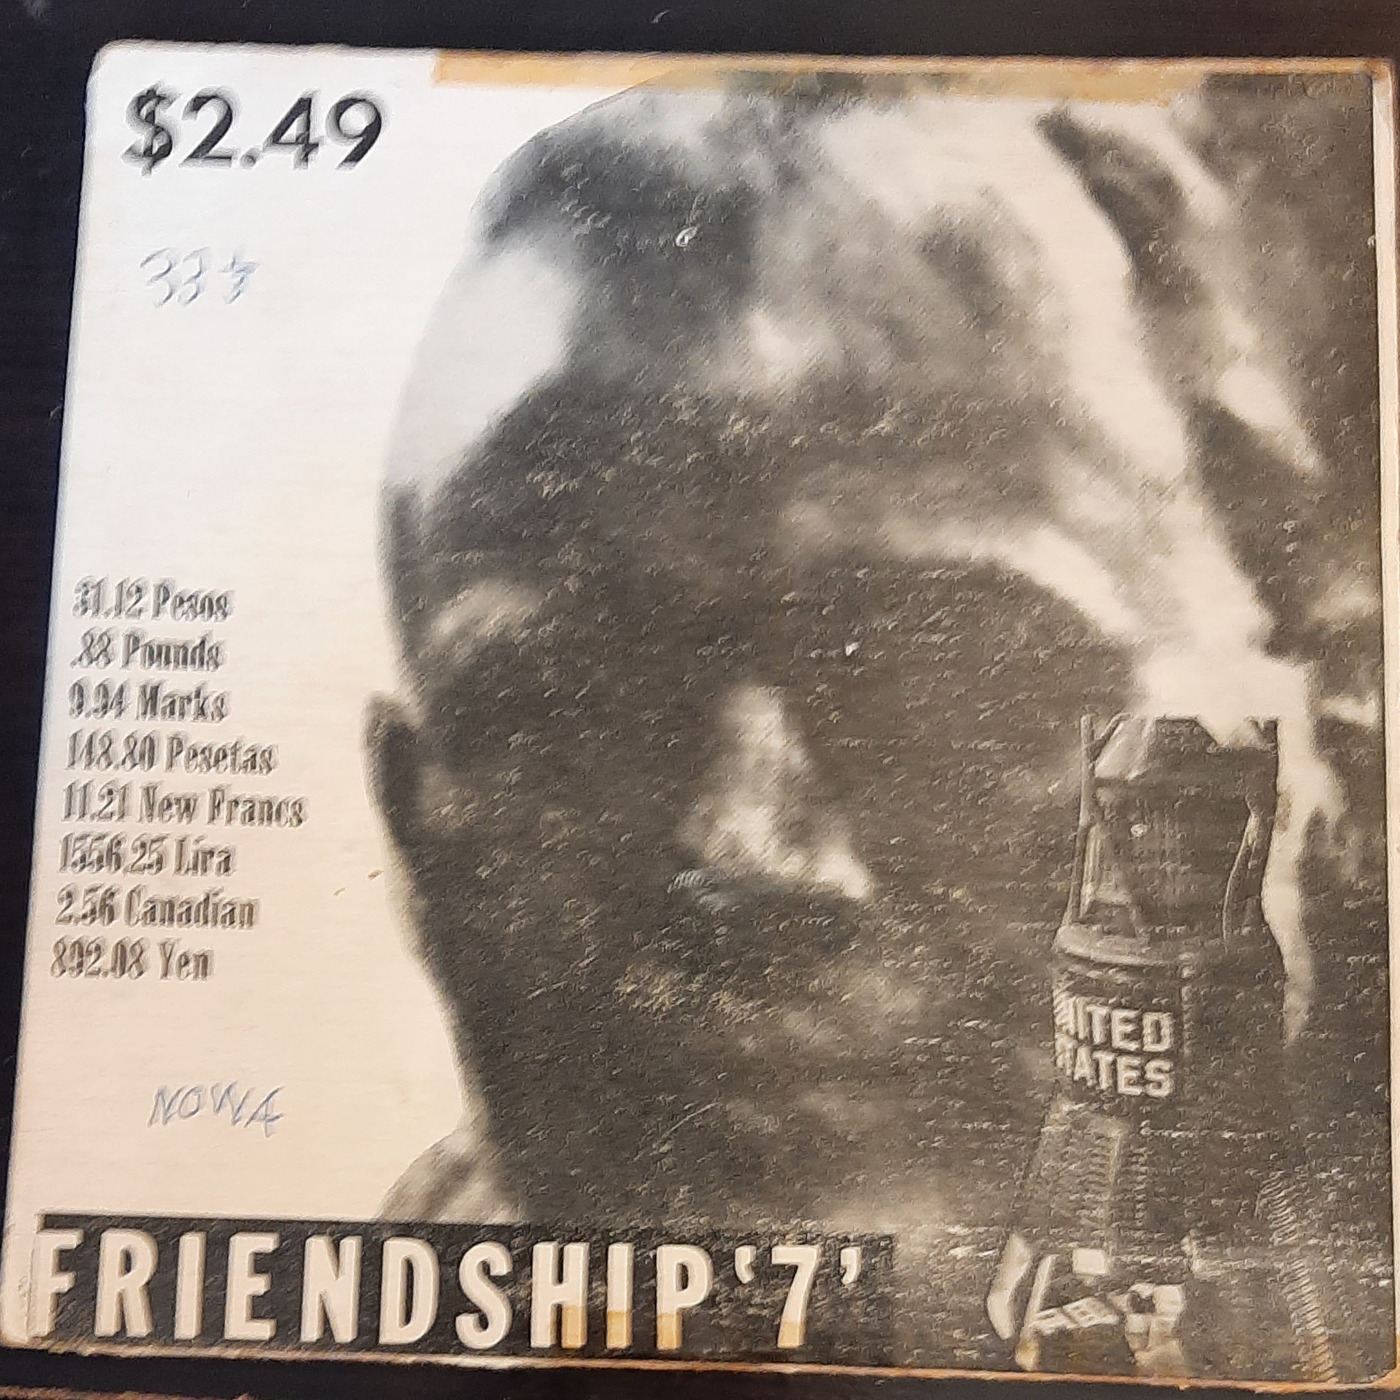 Episode 143: 17143 John Glenn Friendship 7 1962 Commemoration LP